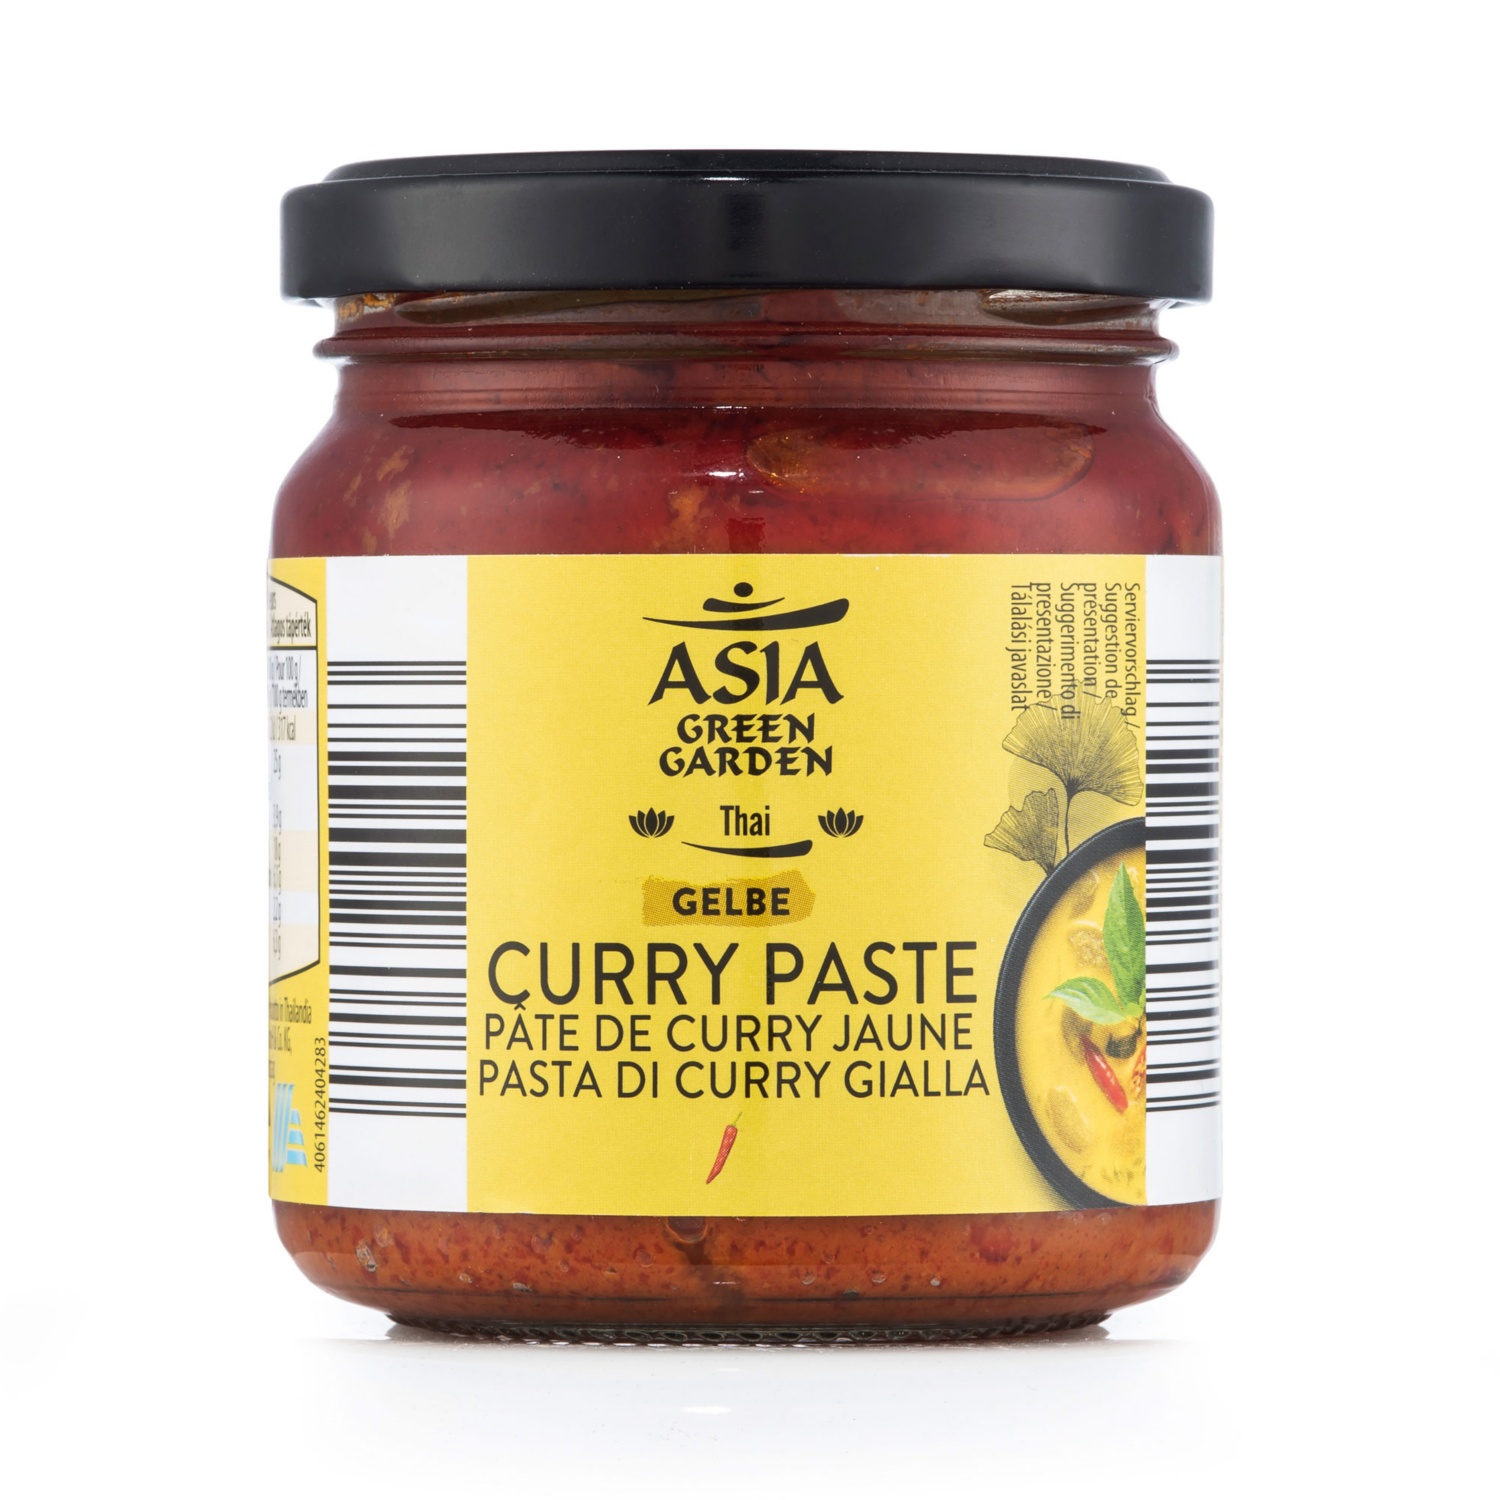 ASIA GREEN GARDEN Pasta di curry, giallo